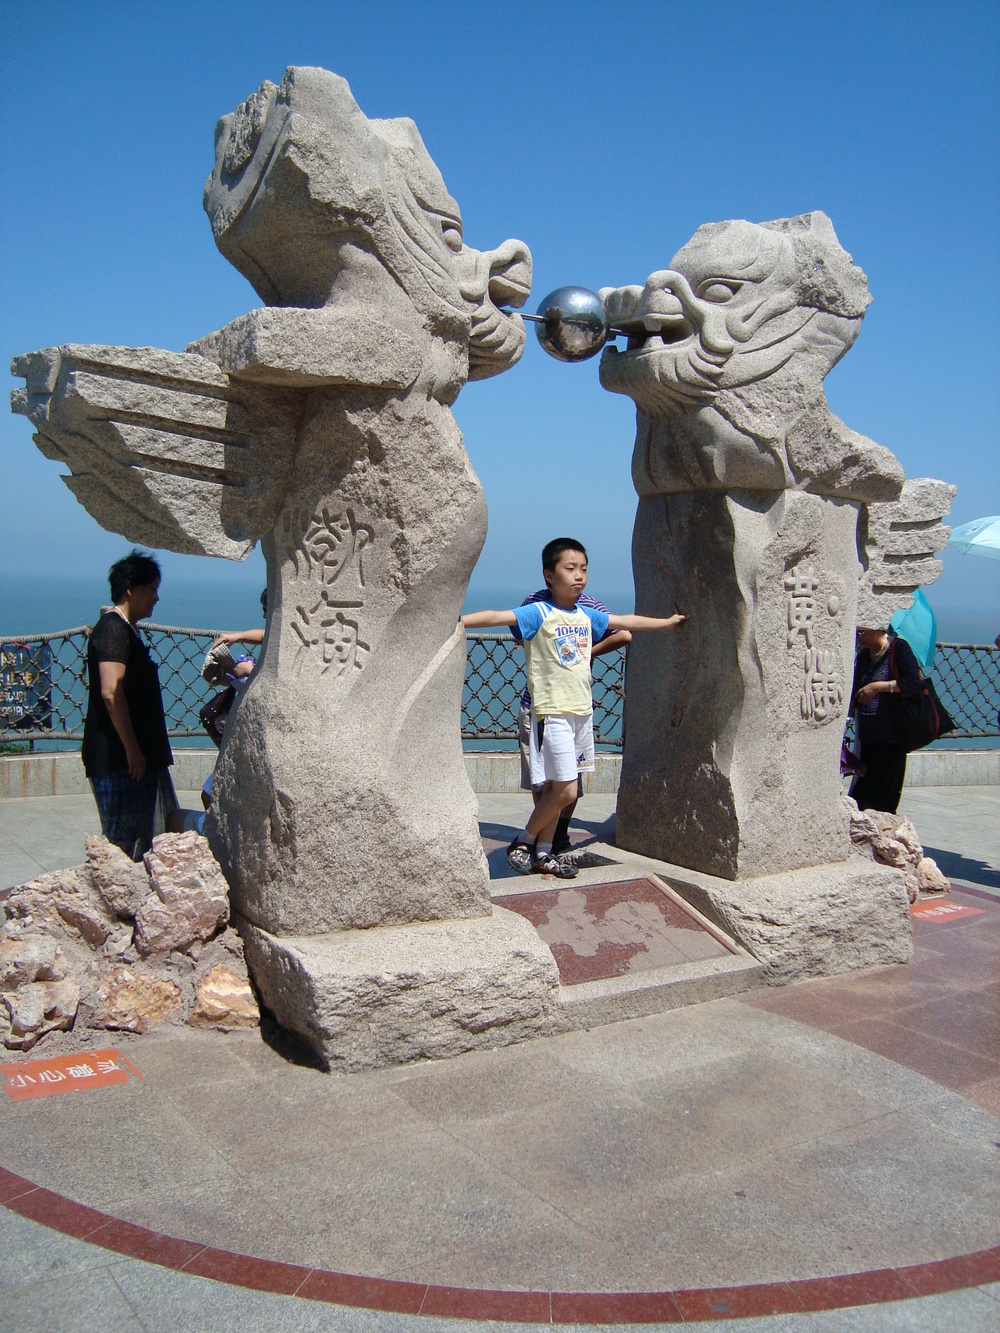 Китай, Пънлай, Паметникът на водната граница между двете морета - Жълто и Бохай
